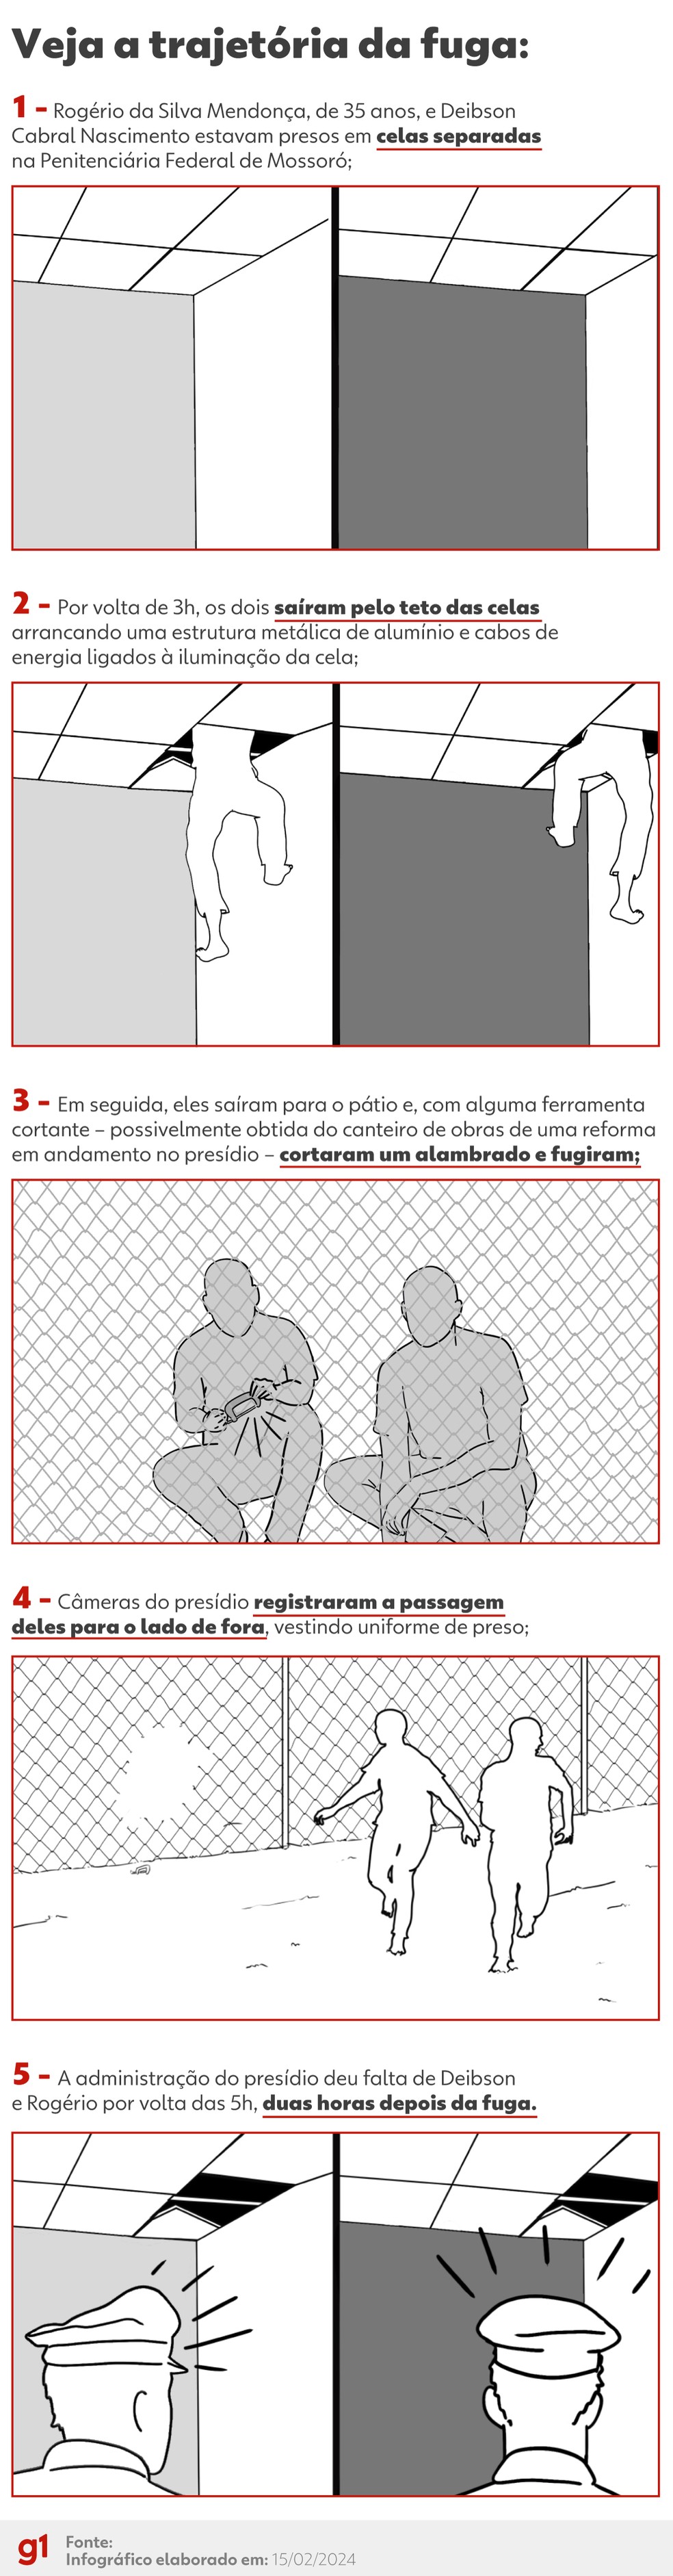 Cronologia da fuga de prisioneiros de Mossoró, segundo fontes ligadas à investigação. — Foto: Gabriel Wesley Marques Santos/ Arte g1